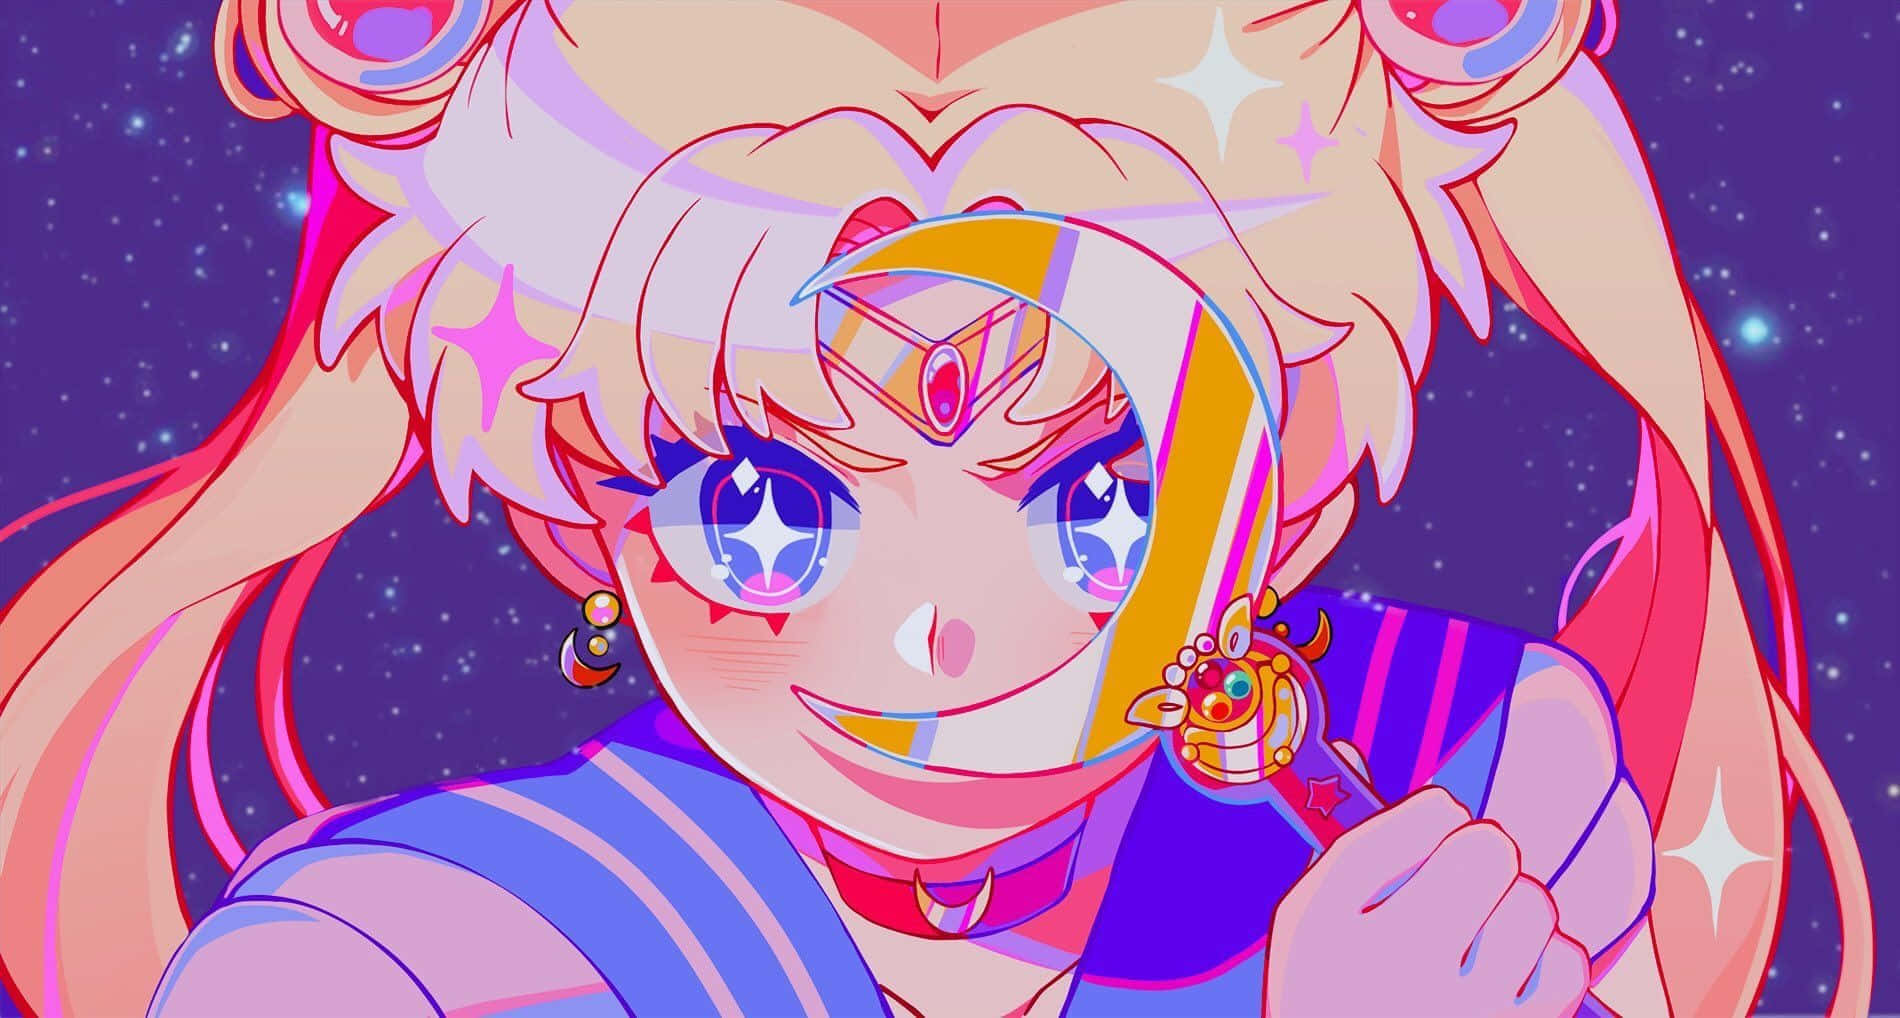 Dielegendäre Sailor Moon, Mit Ihrer Tiara Und Ihrem Magischen Stab!